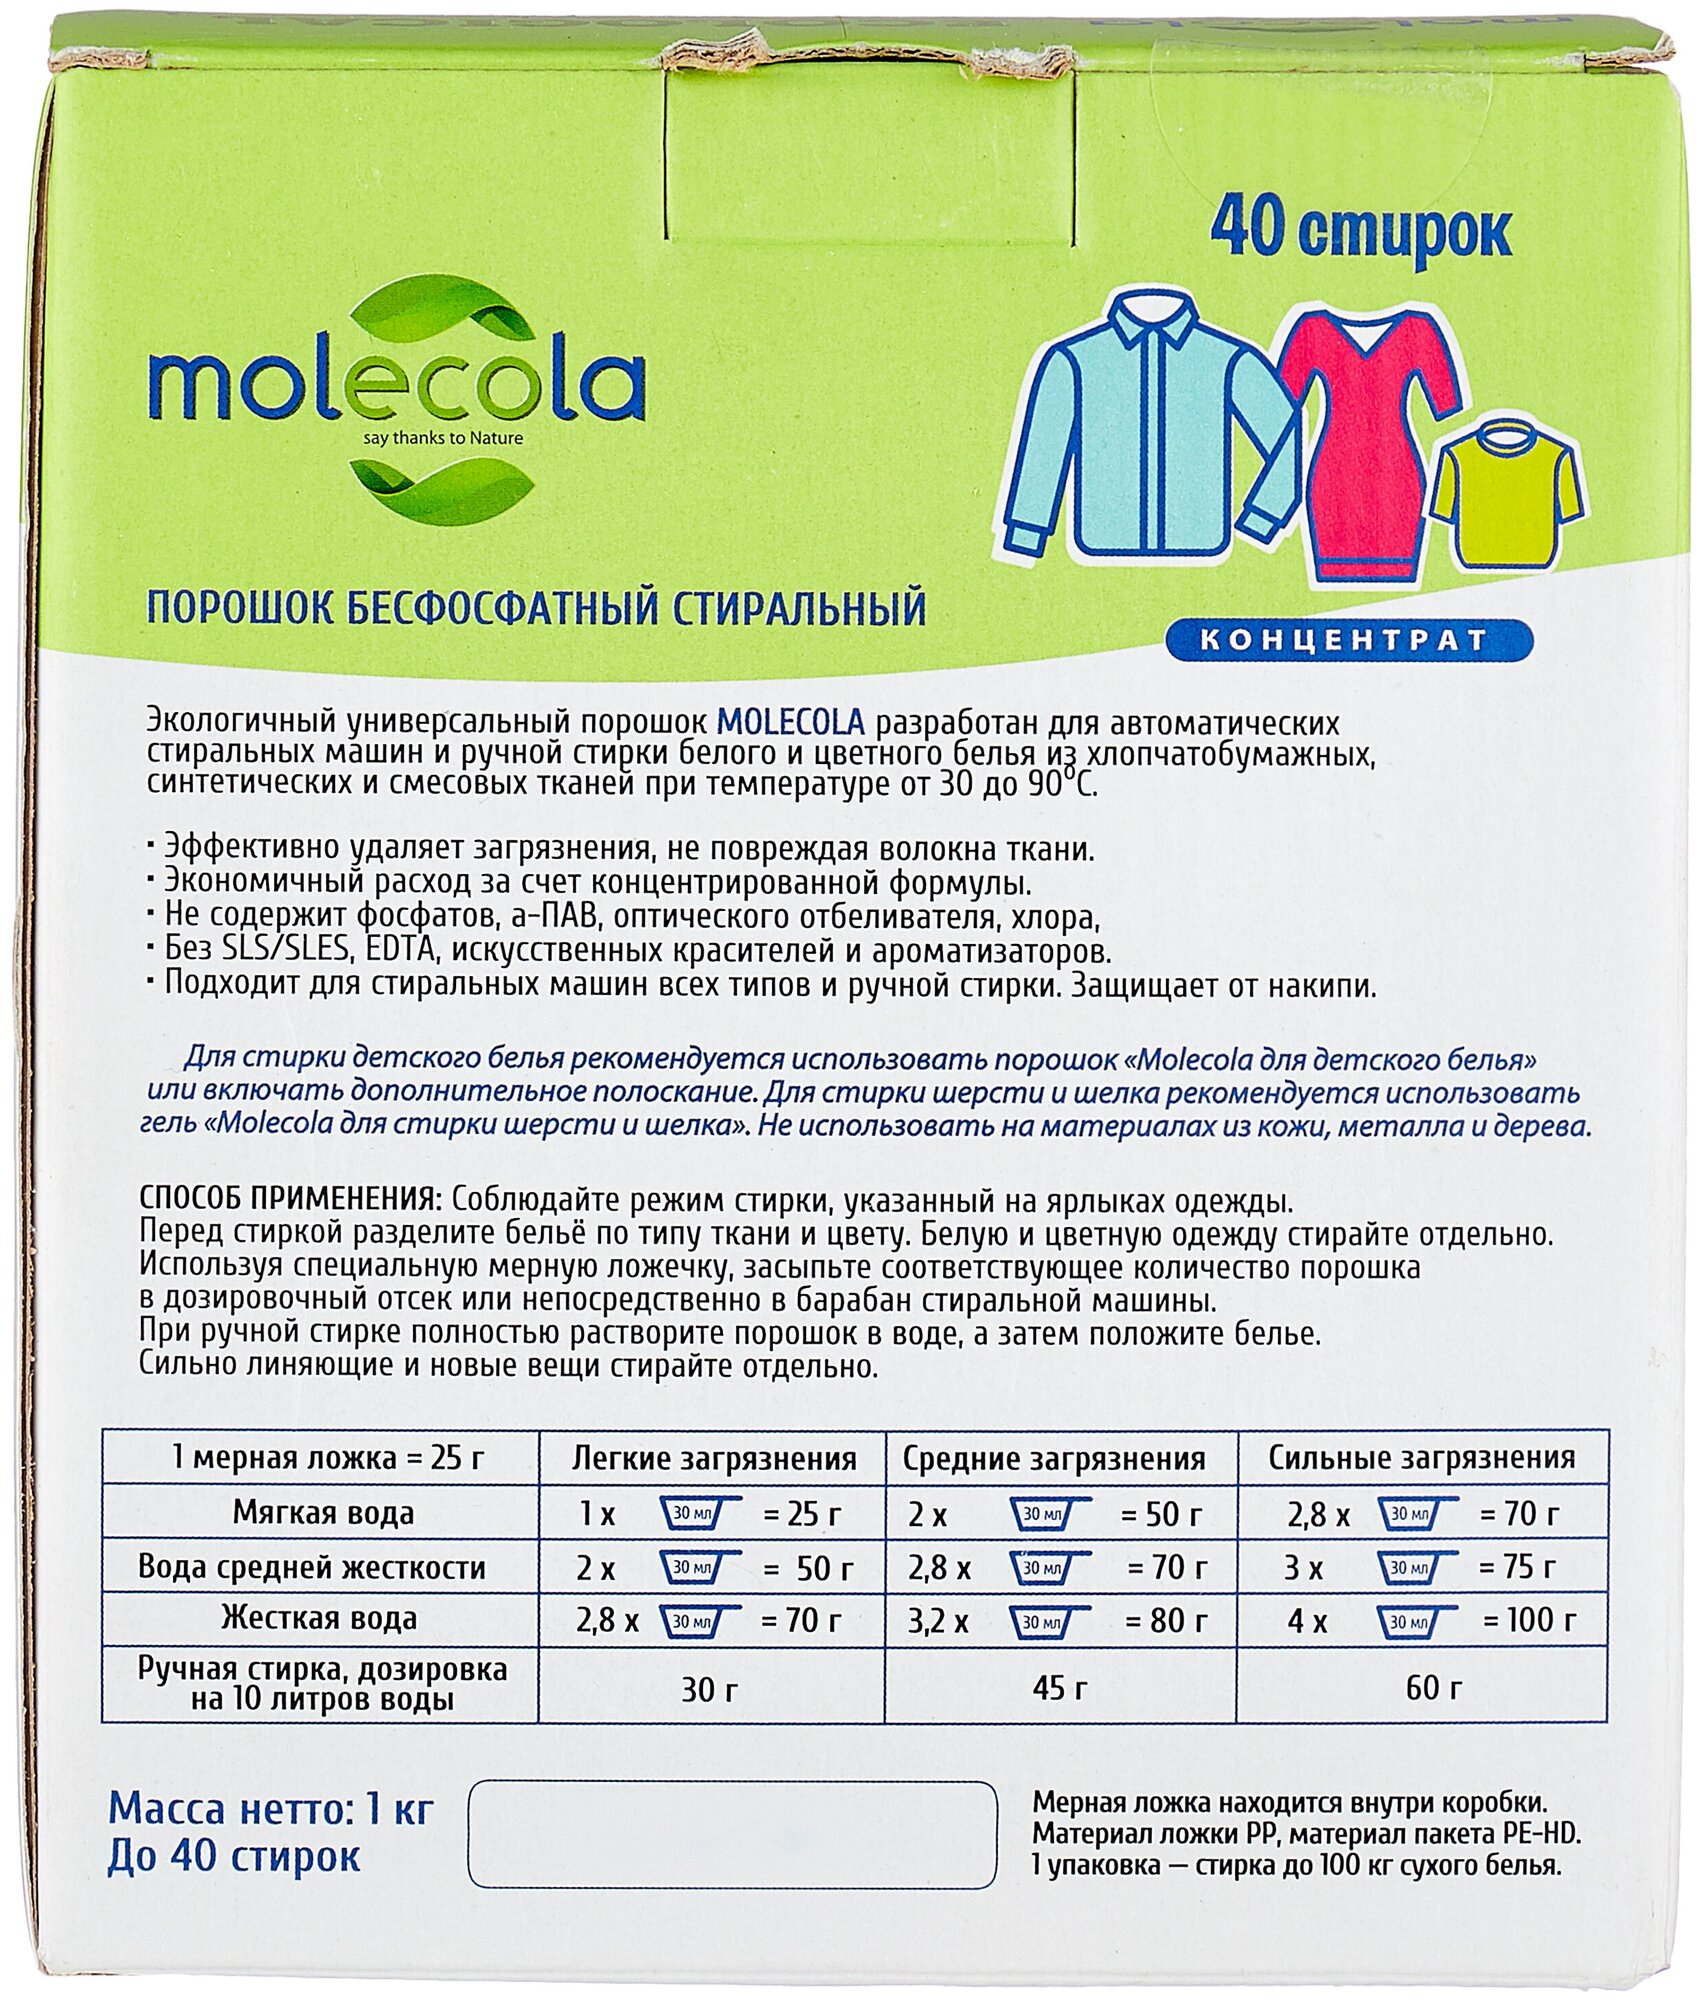 Molecola Экологичный универсальный порошок для стирки Концентрат 1 кг (Molecola, ) - фото №2